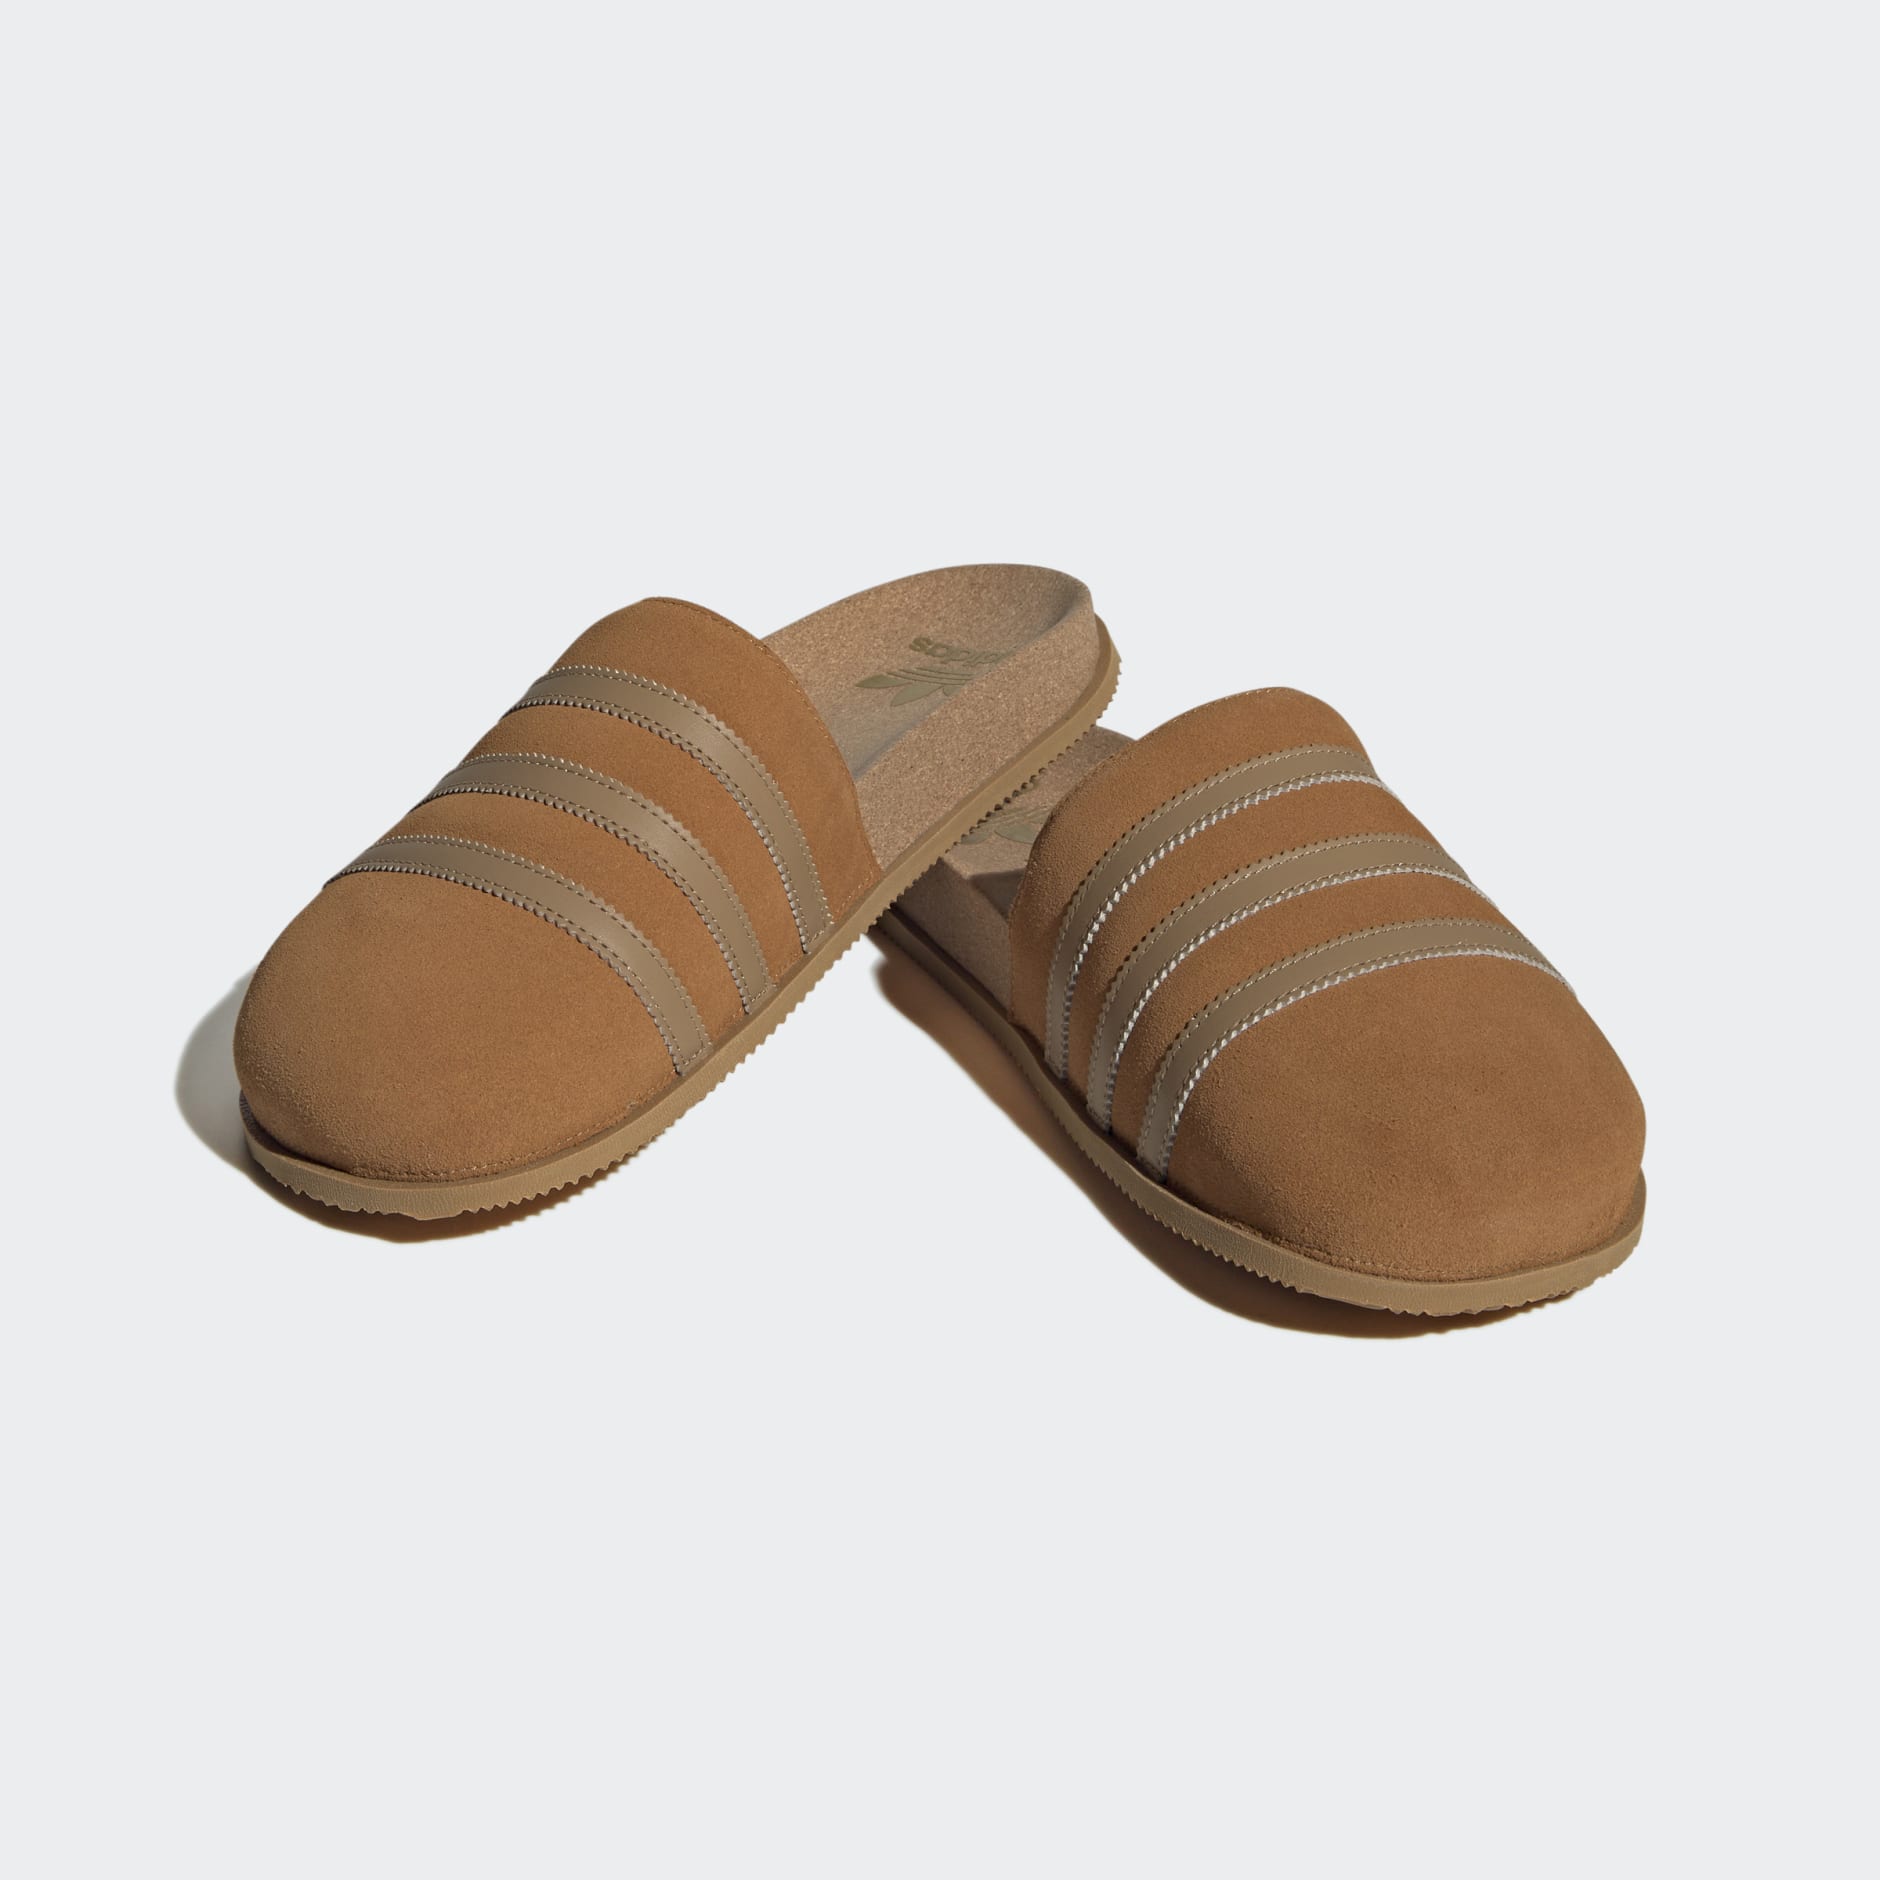 Originals Shoes - Adimule Lea Slides - Brown | adidas Egypt